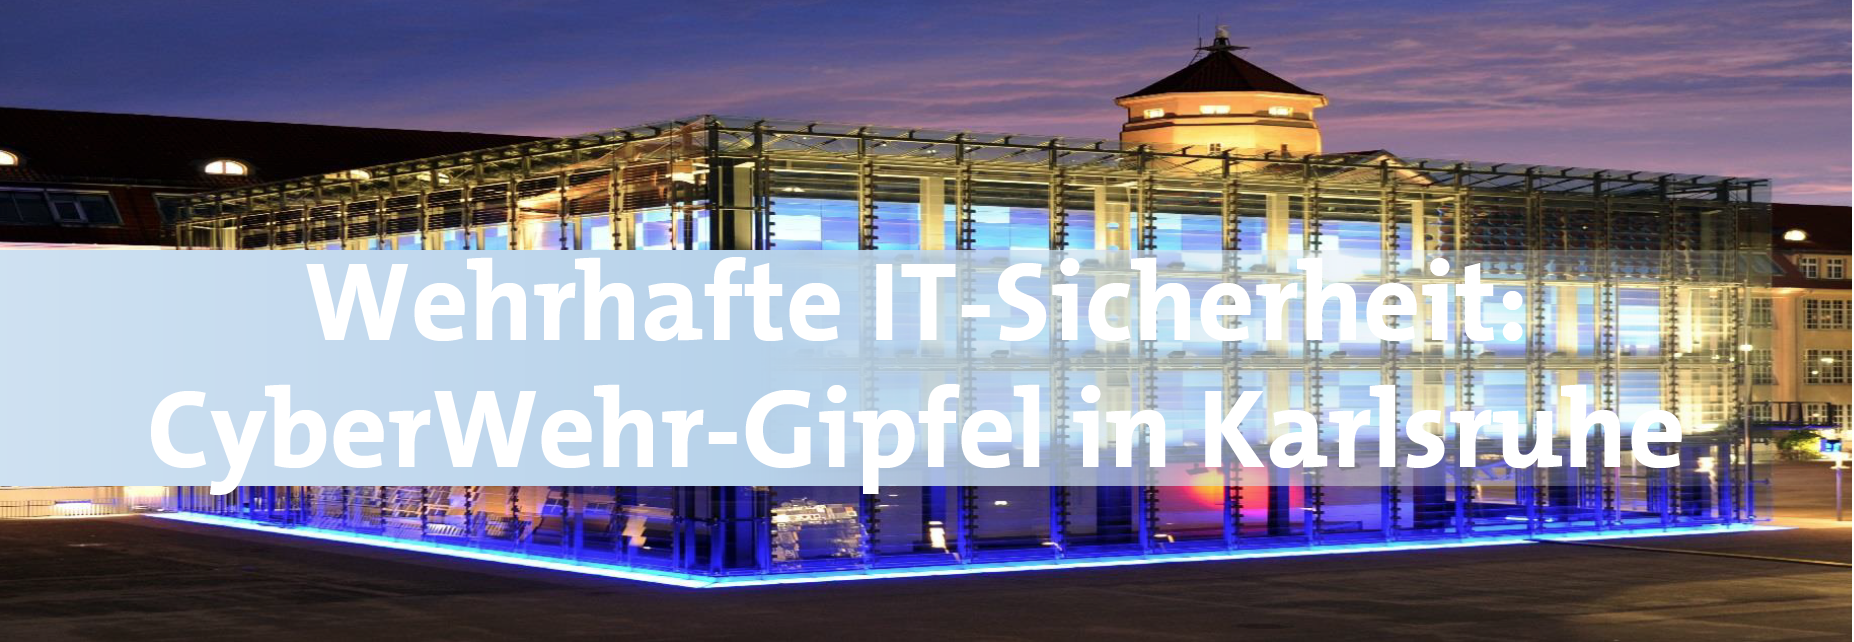 Wehrhafte IT-Sicherheit: Cyberwehr-Gipfel in Karlsruhe